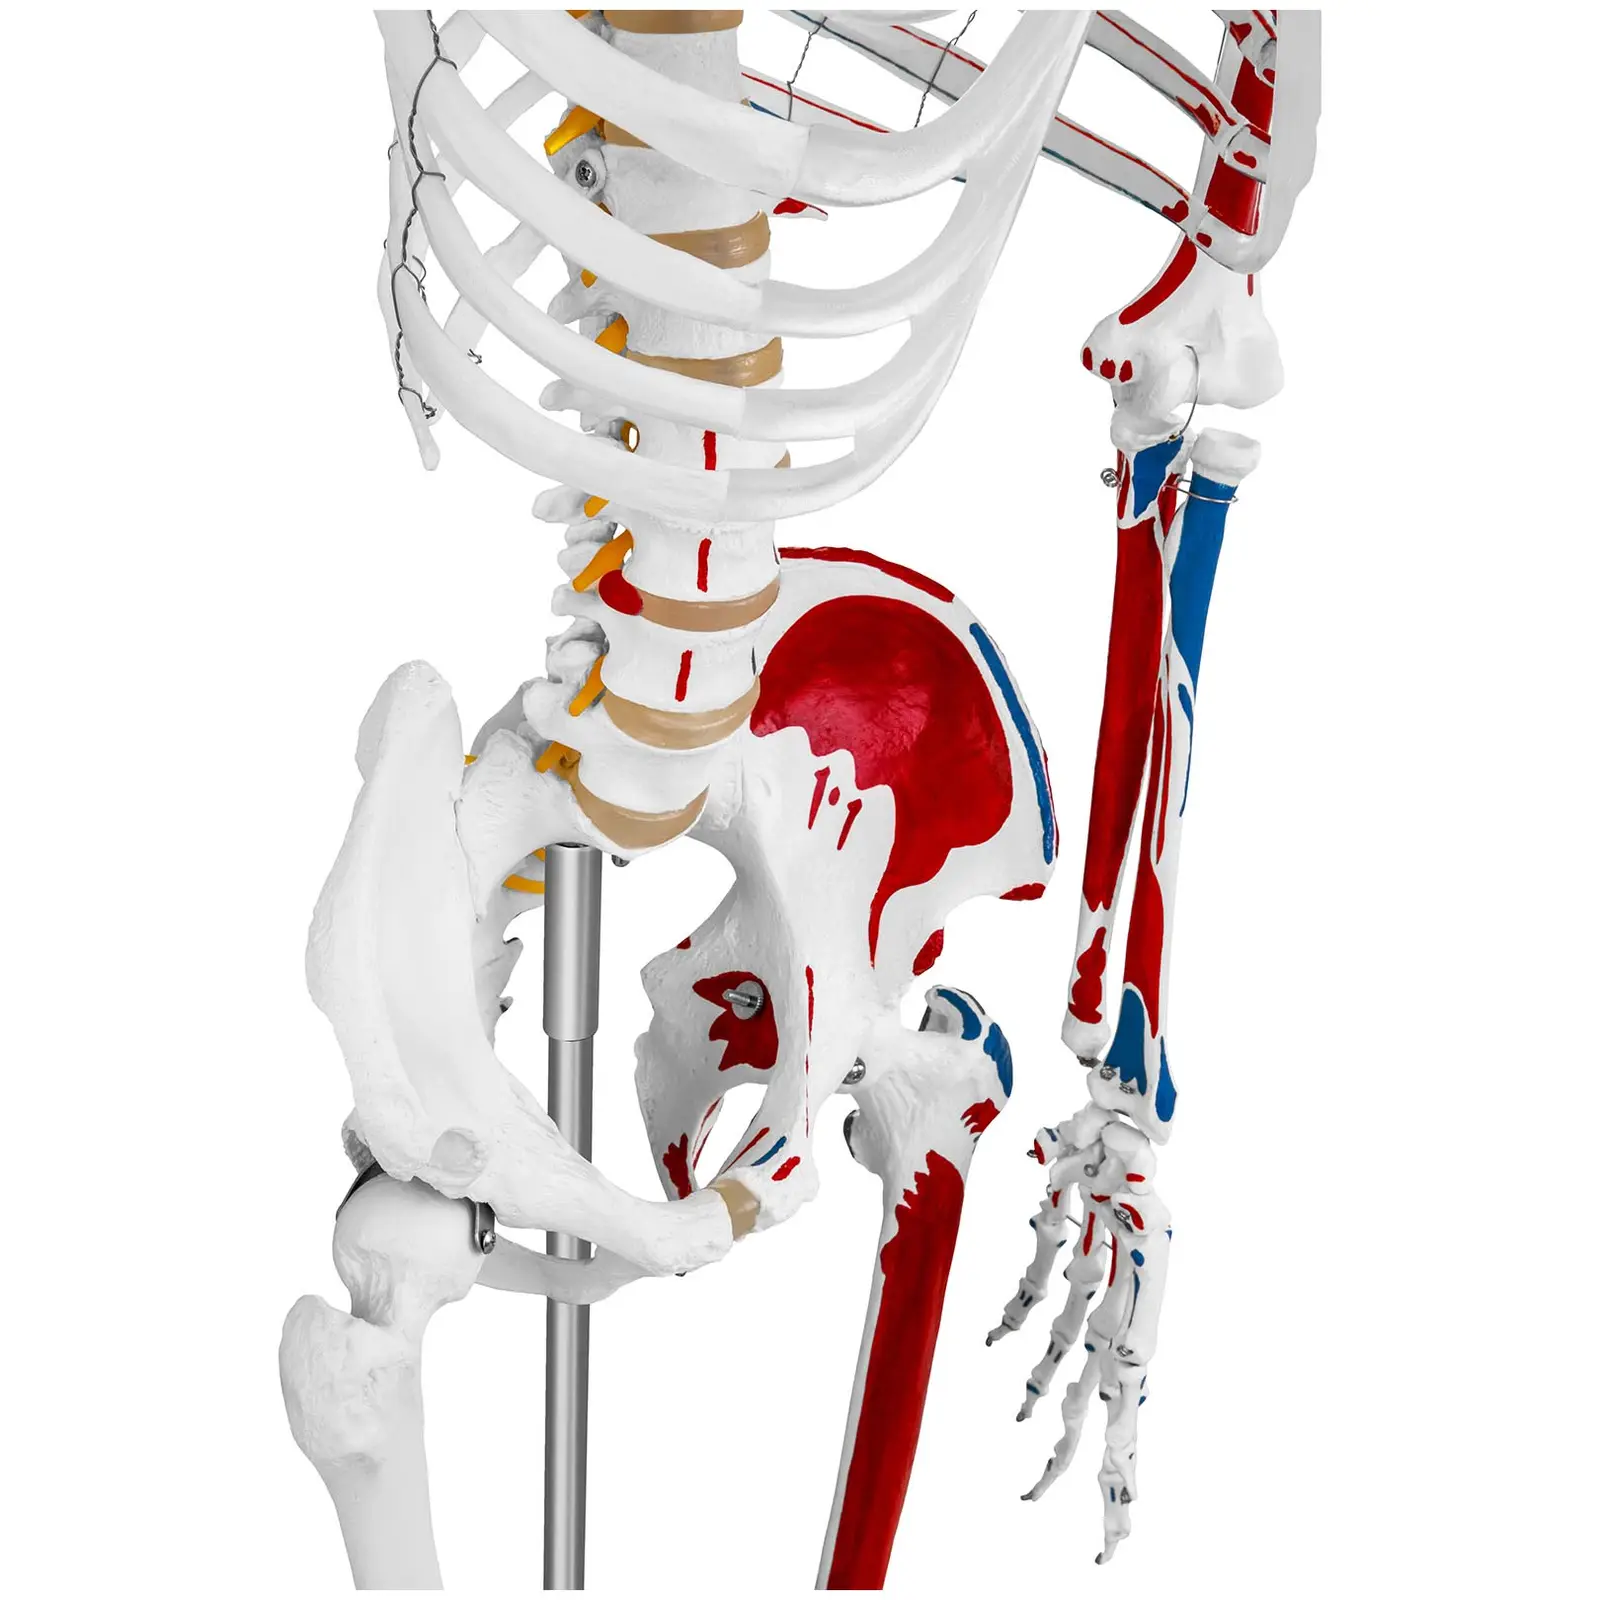 Modello scheletro umano - A grandezza naturale - Colorato